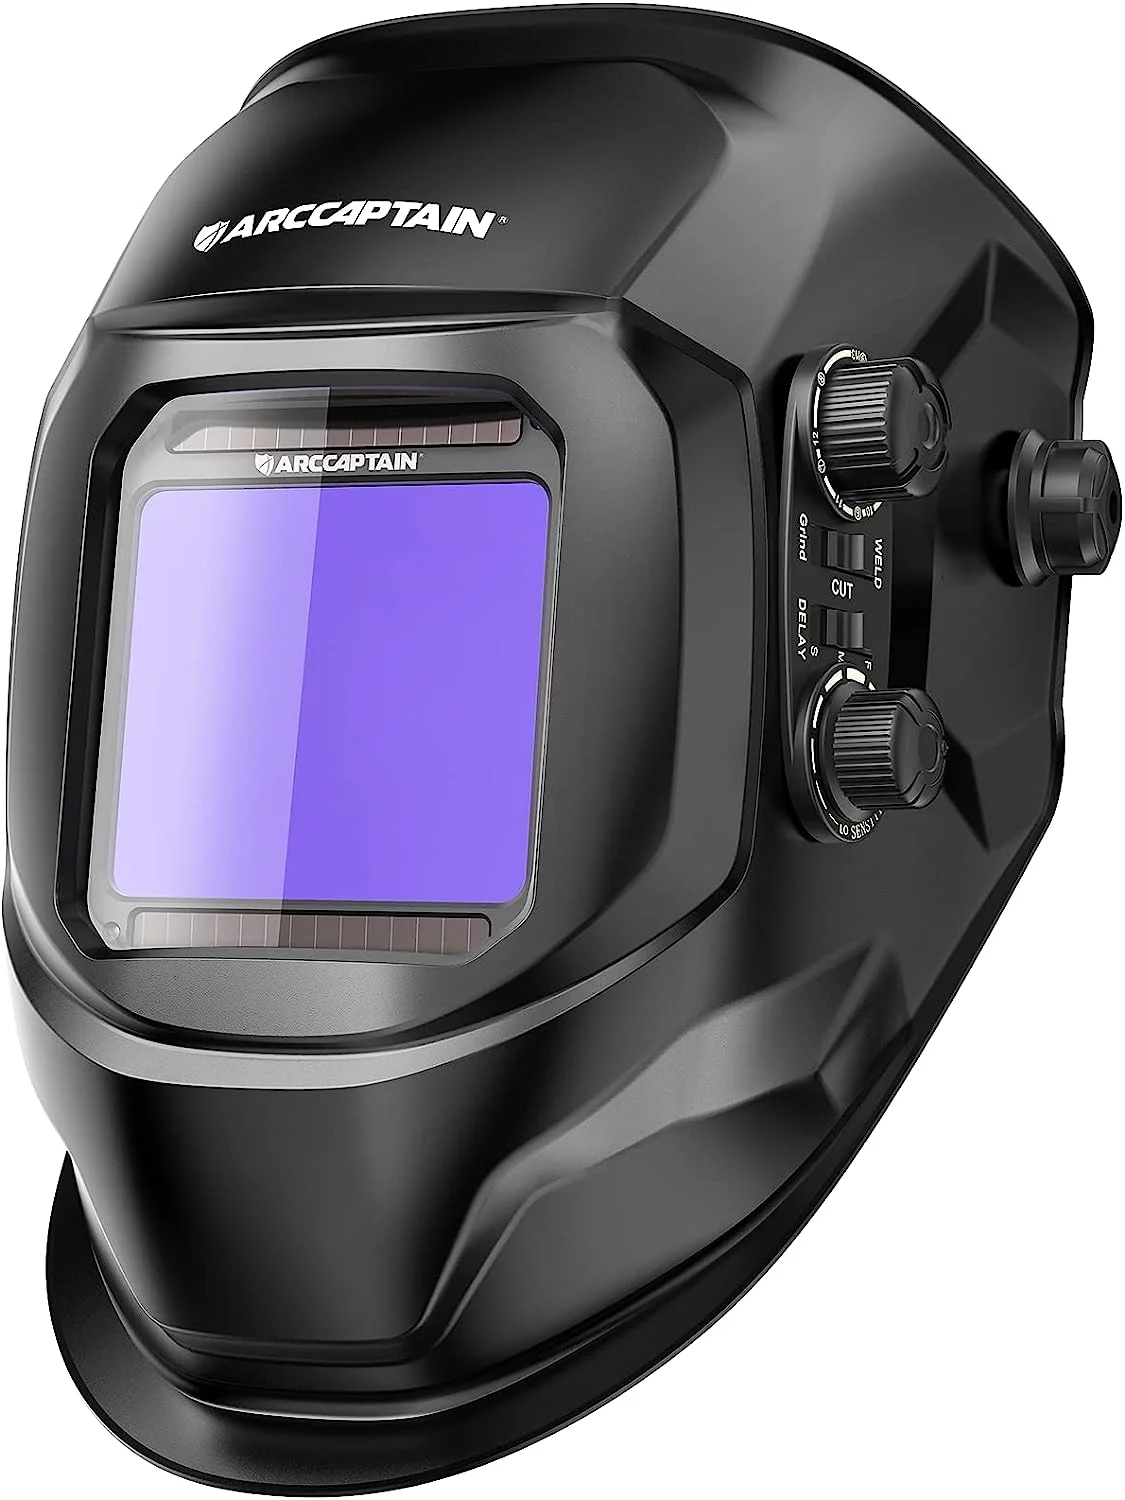 ARCCAPTAIN Welding Helmet, Welding Mask True Color Auto Darkening, Large Viewing Screen